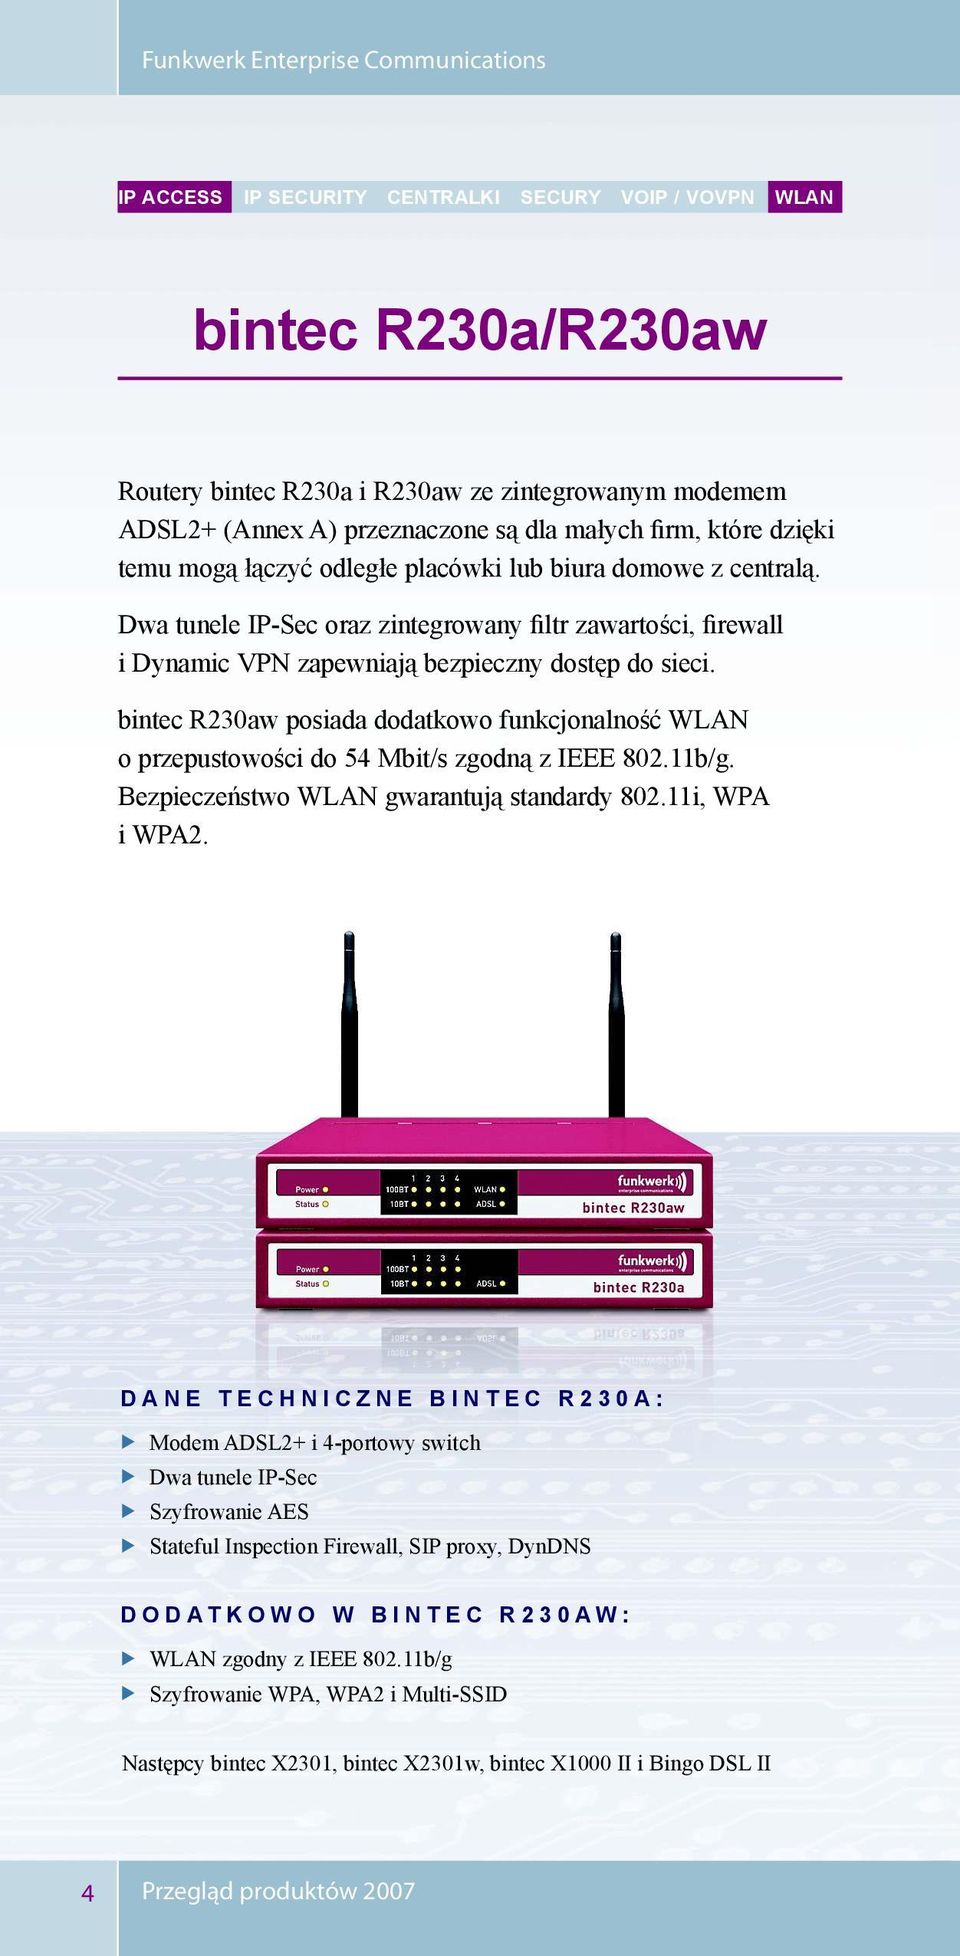 bintec R230aw posiada dodatkowo funkcjonalność WLAN o przepustowości do 54 Mbit/s zgodną z IEEE 802.11b/g. Bezpieczeństwo WLAN gwarantują standardy 802.11i, WPA i WPA2.